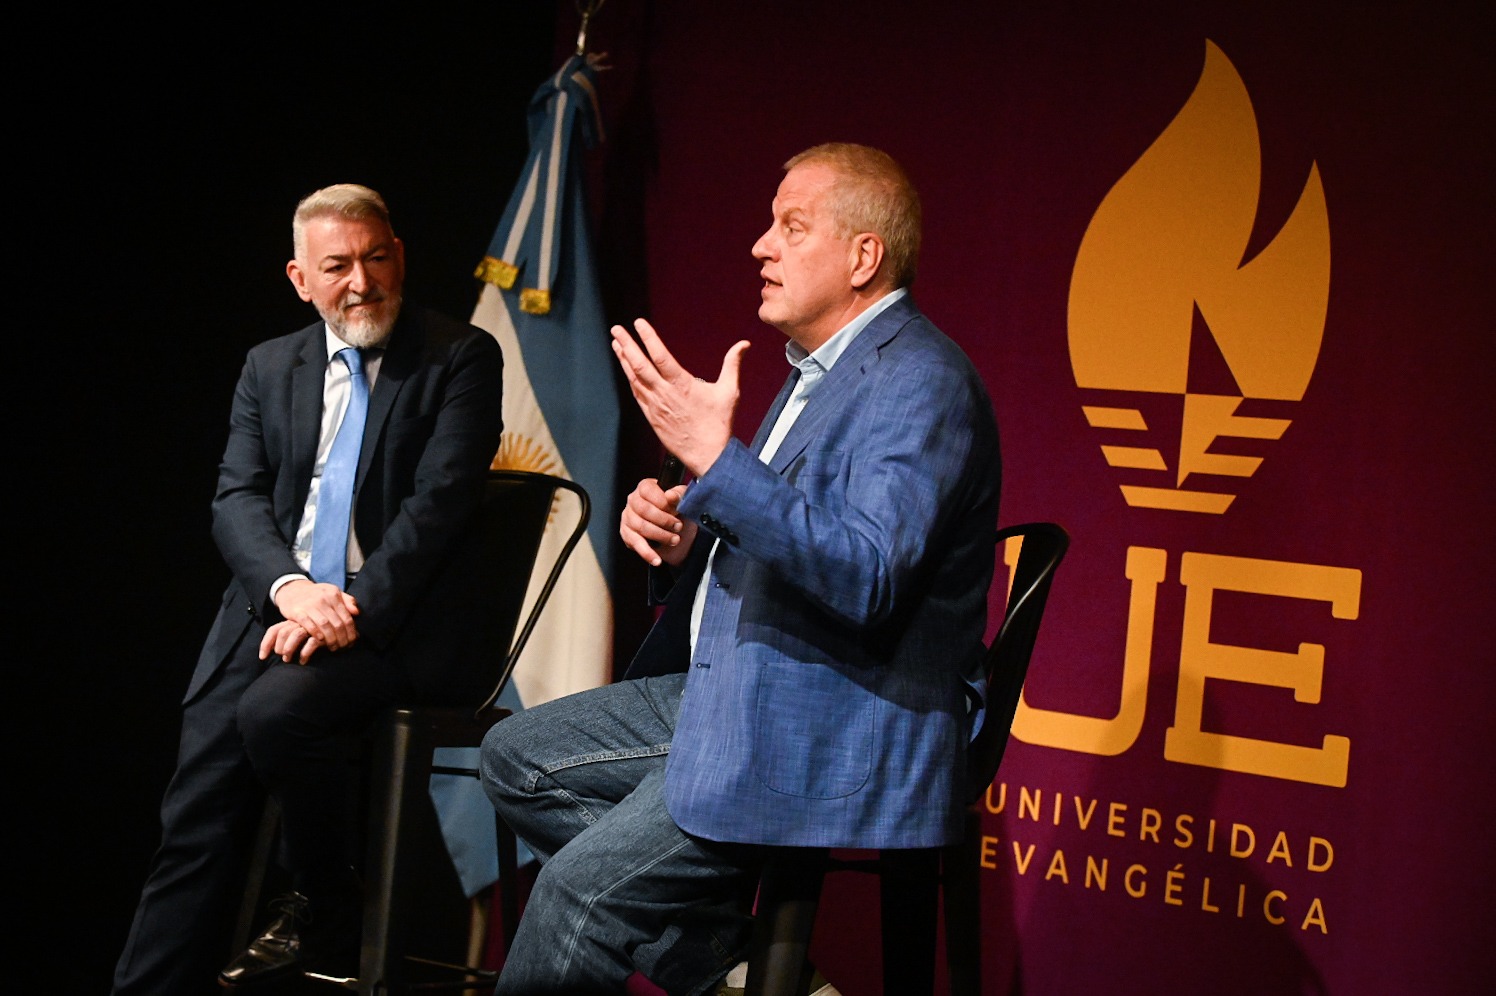 Perczyk anunció la fundación de la primera Universidad Evangélica de Argentina y el Cono sur